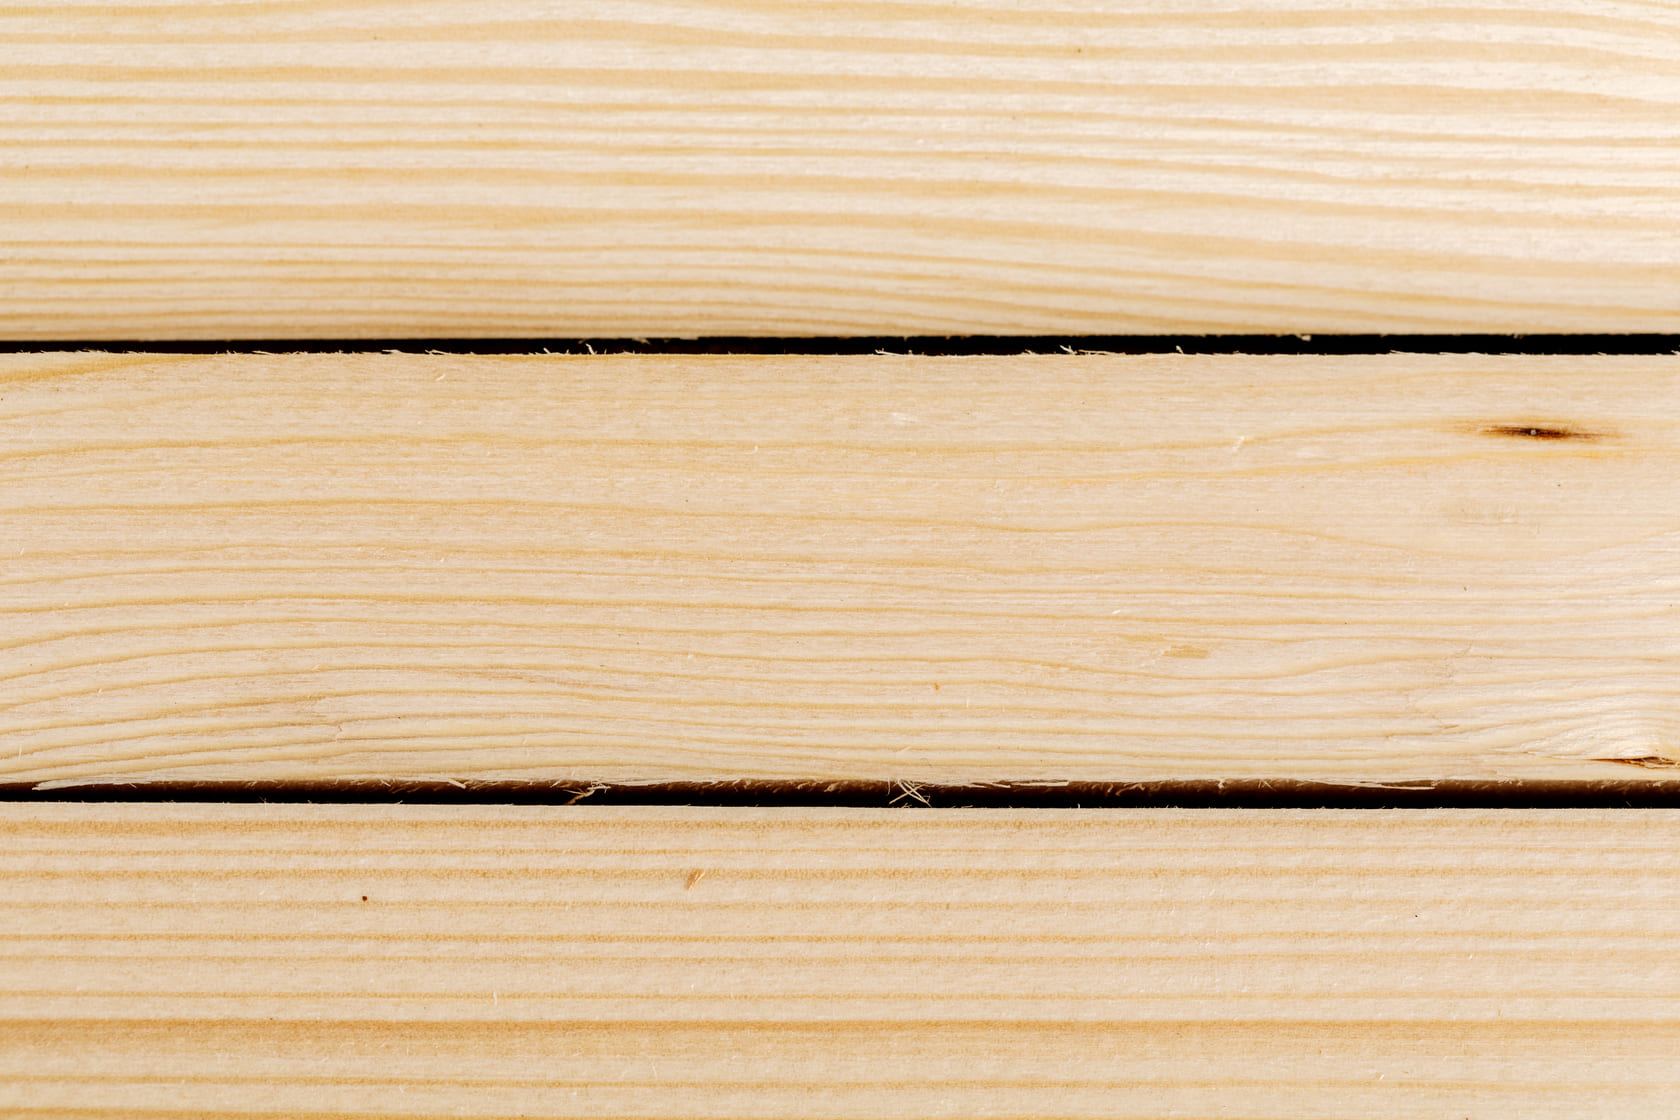 Friso de madera: cómo hacer uno paso a paso - Modrego Blog